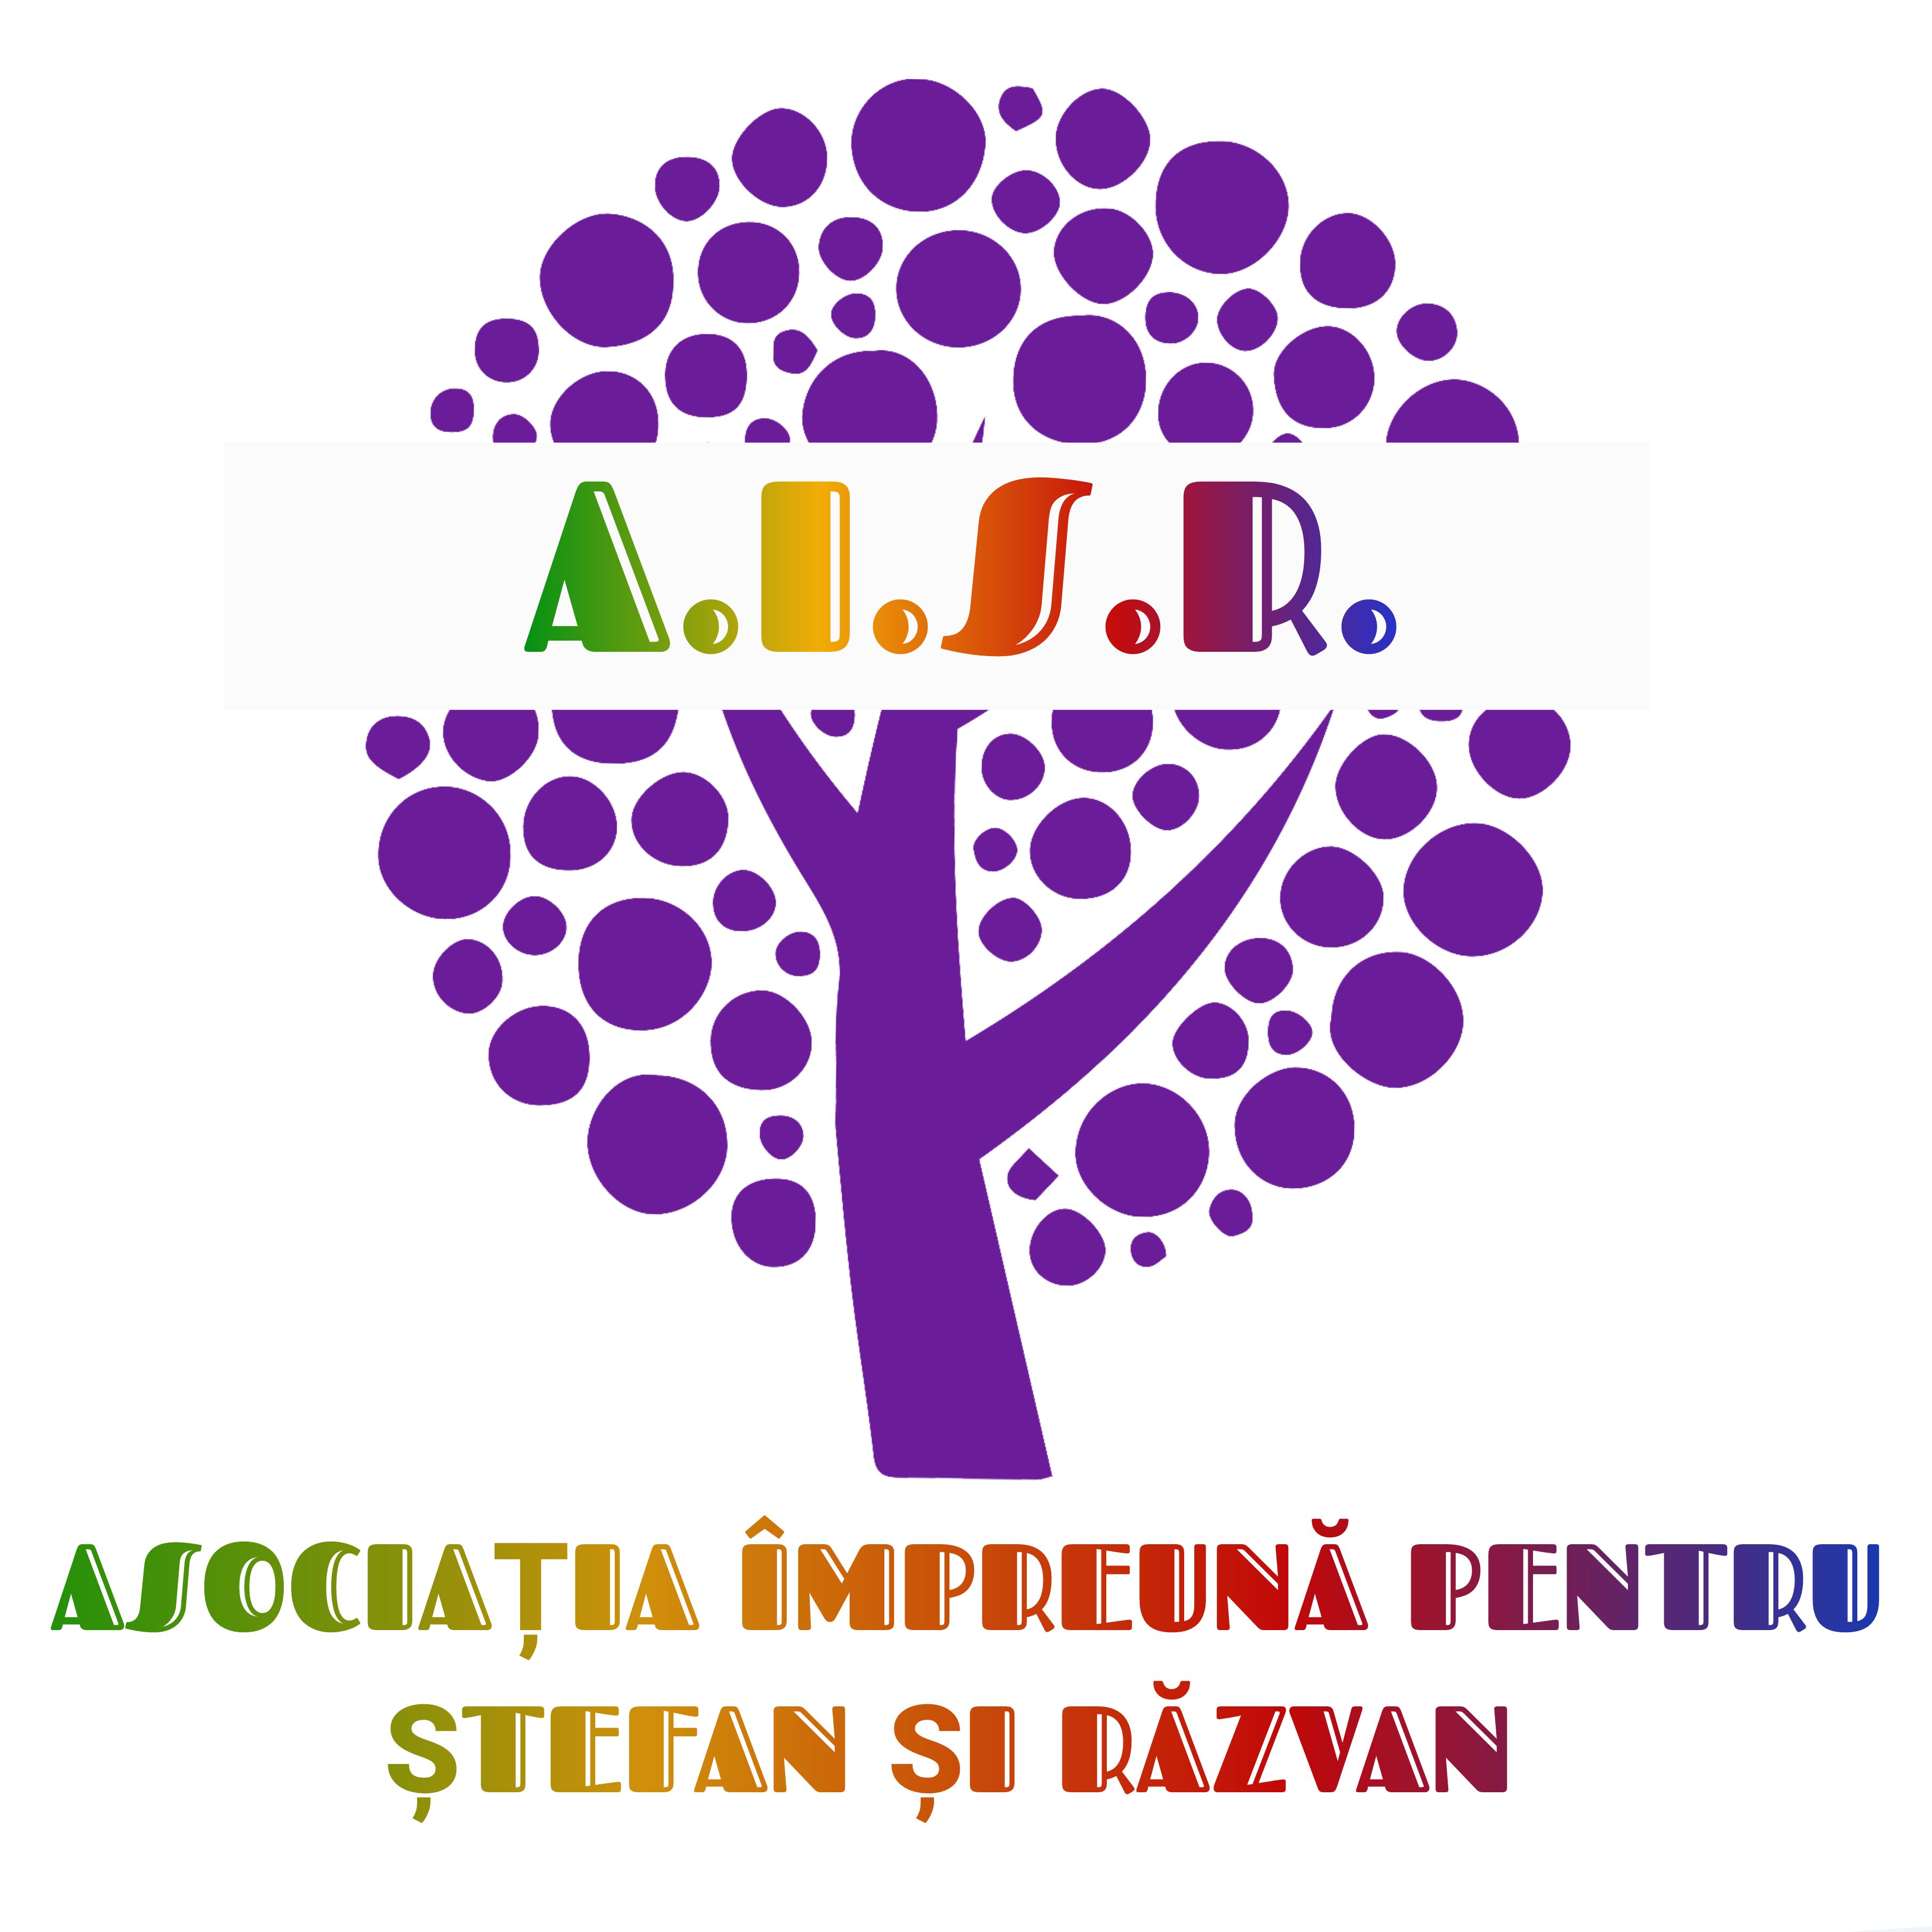 Asociația Împreună pentru Ștefan și Răzvan  logo